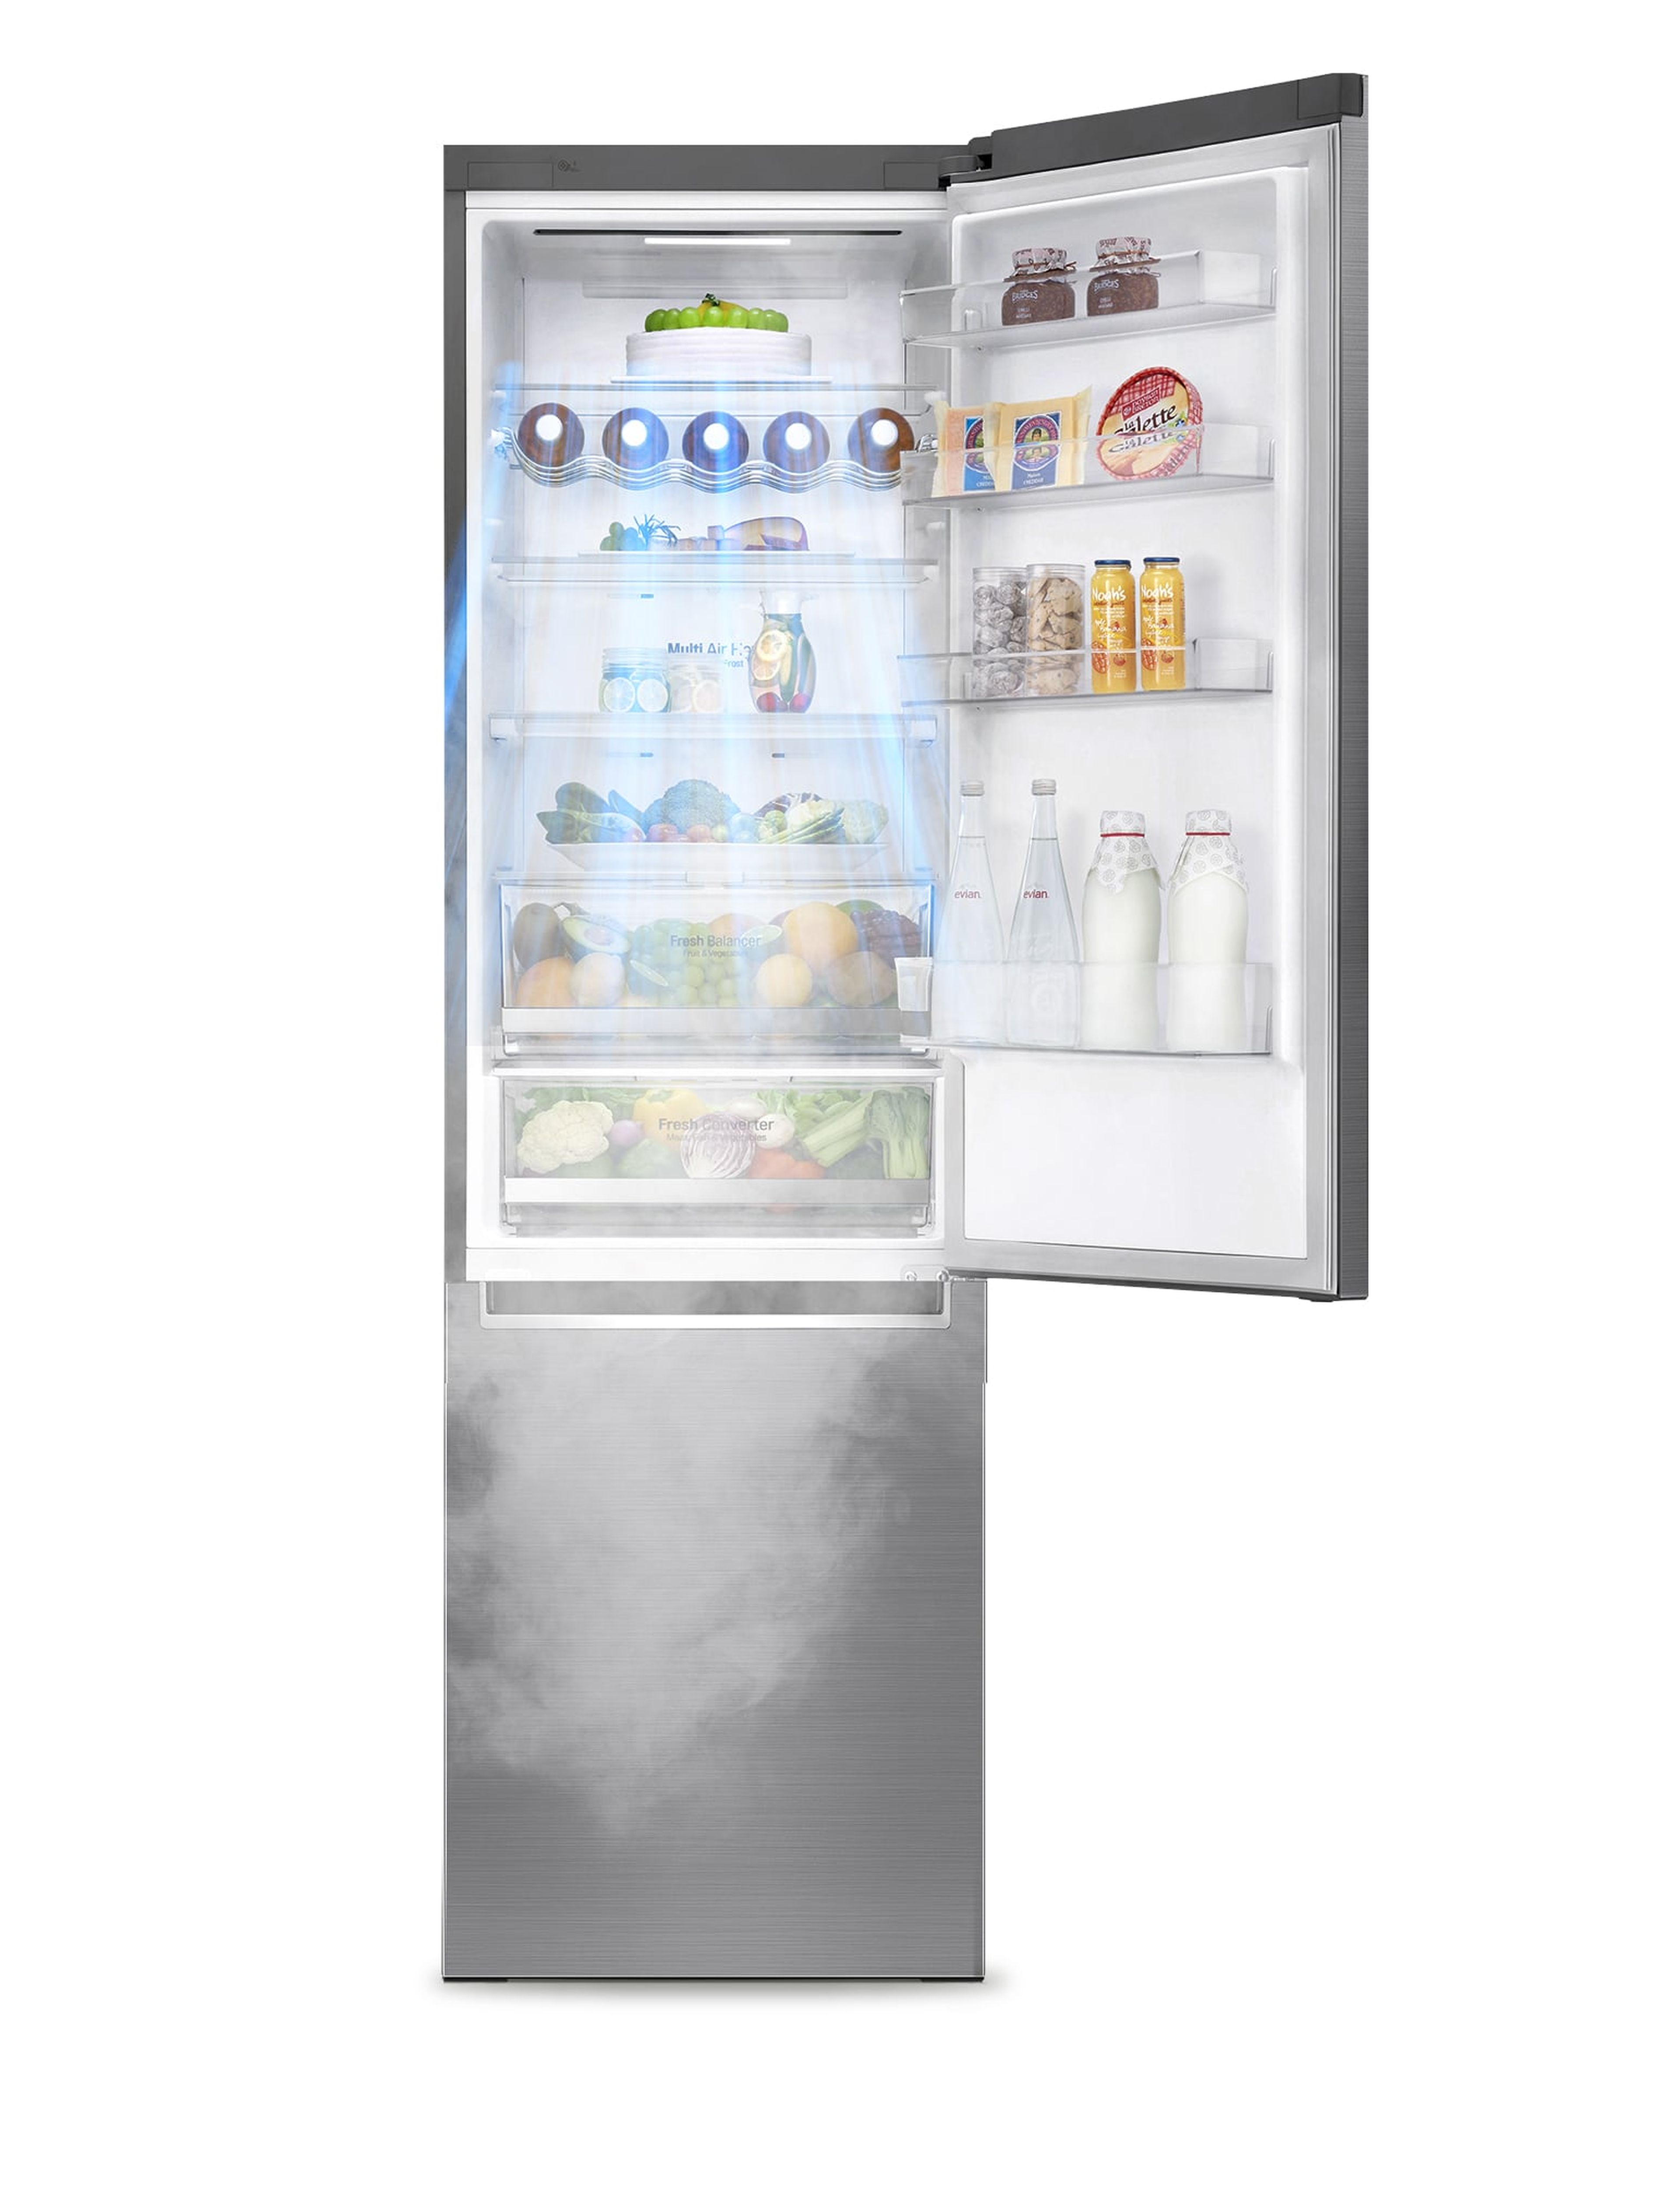 El sistema Door Cooling, una cascada de aire que enfría todo el frigorífico un 32% más rápido y de forma uniforme en todos los rincones